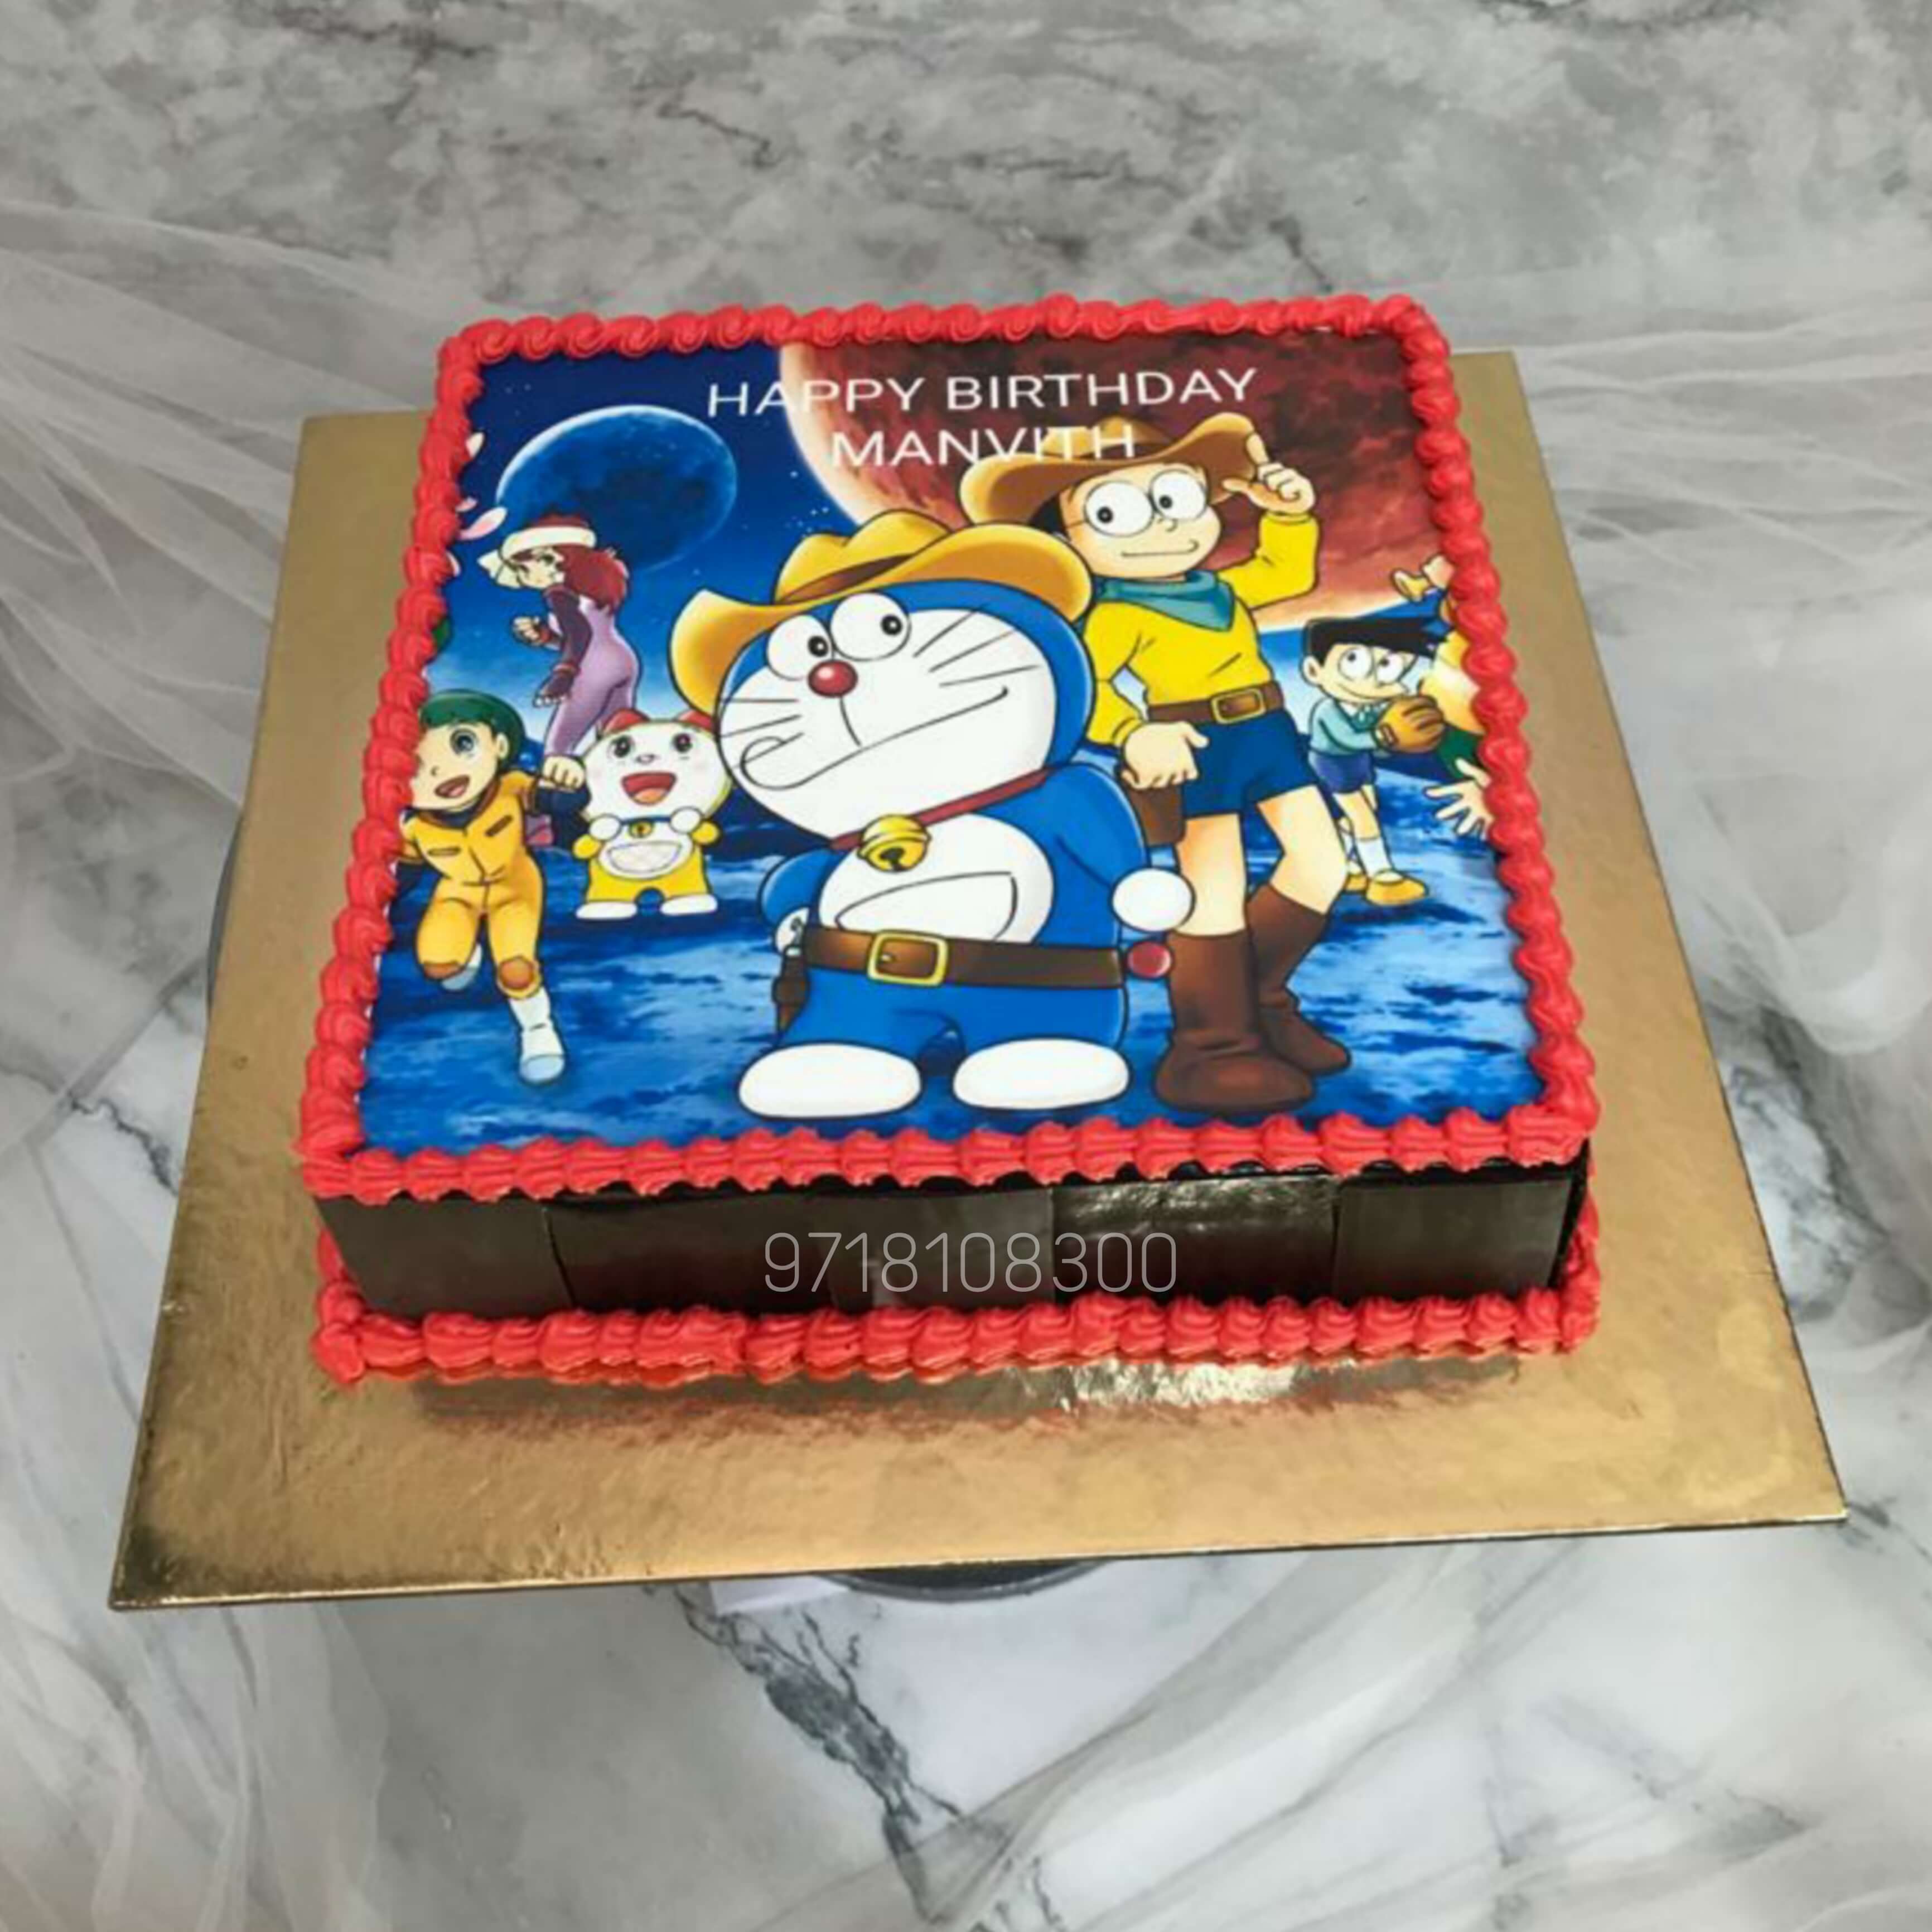 Doraemon theme cake 2kg pineapple